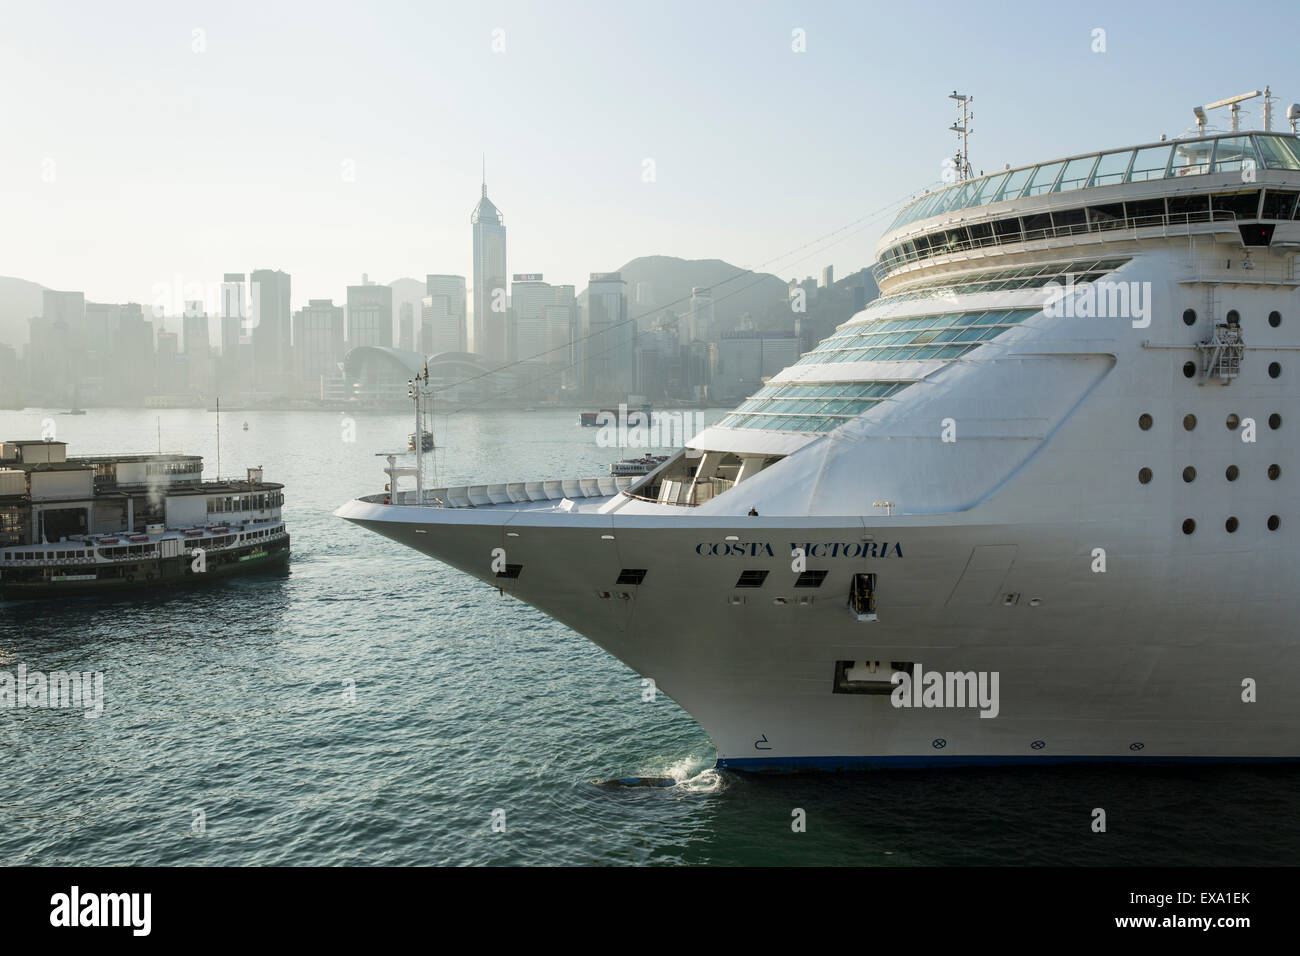 Cina, Hong Kong, nave da crociera Costa Victoria cravatte in Tsim Sha Tsui in Kowloon lato del porto di Hong Kong con lo skyline della citta' a Foto Stock